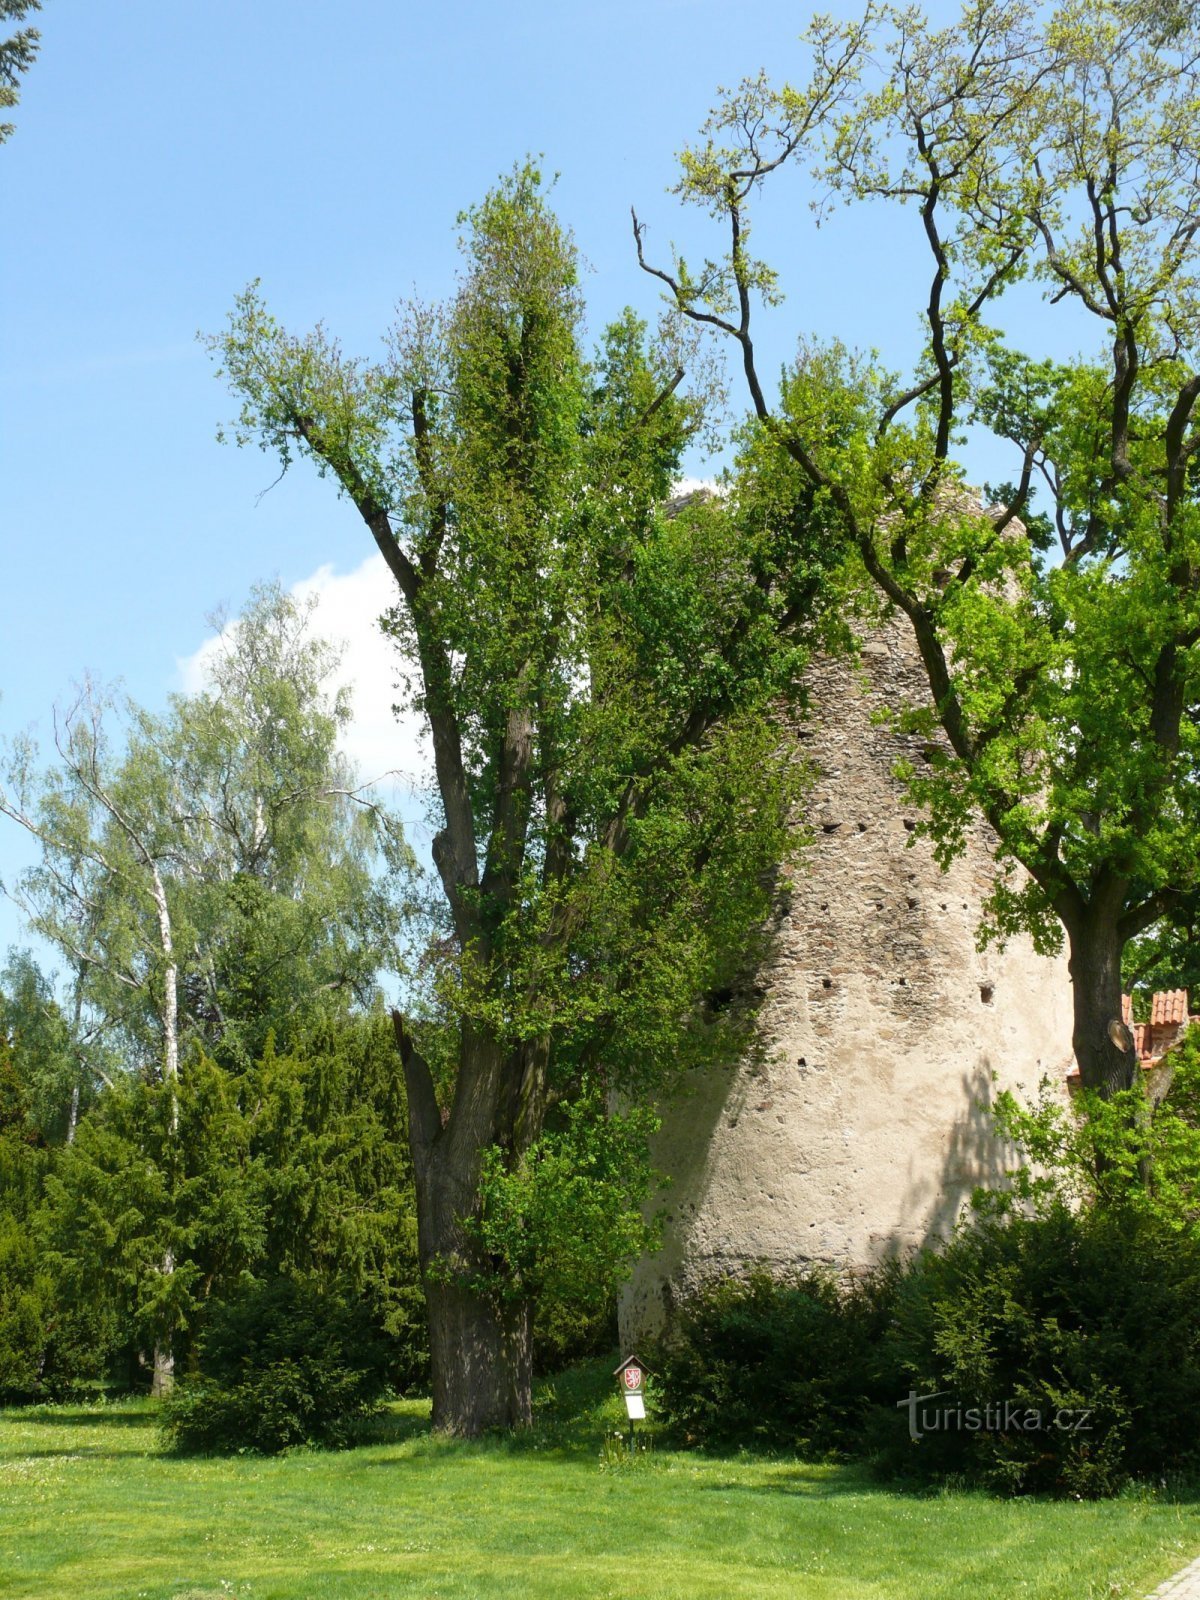 La quercia commemorativa di Kolovrat